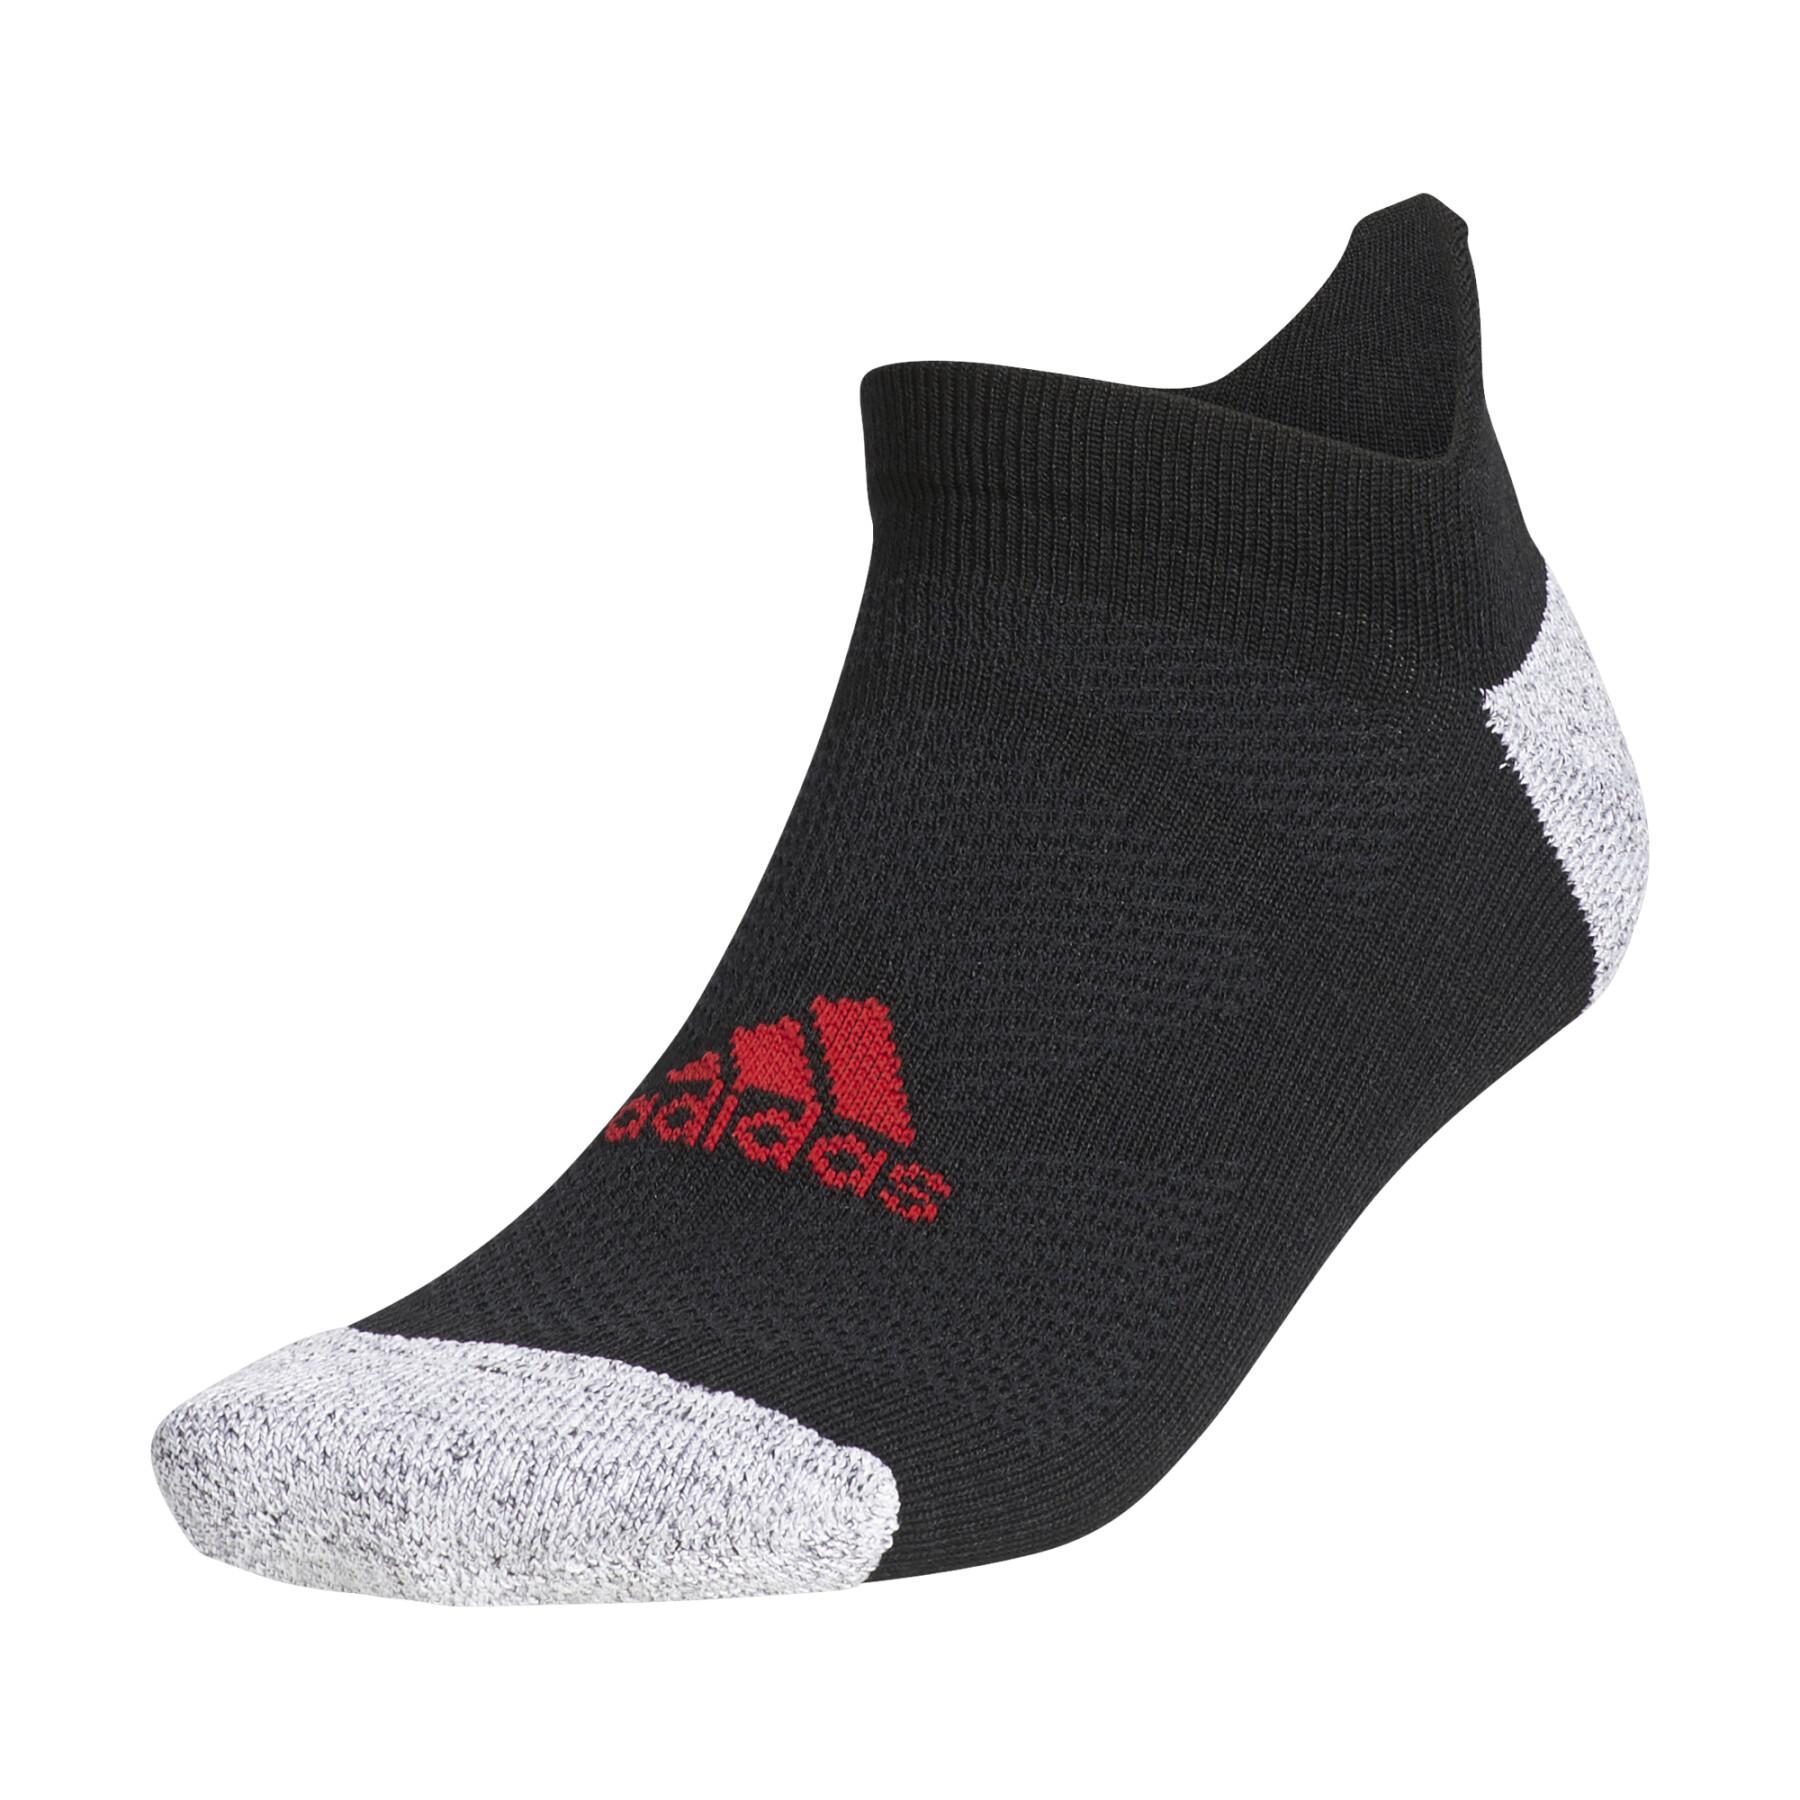 Socken adidas Tour